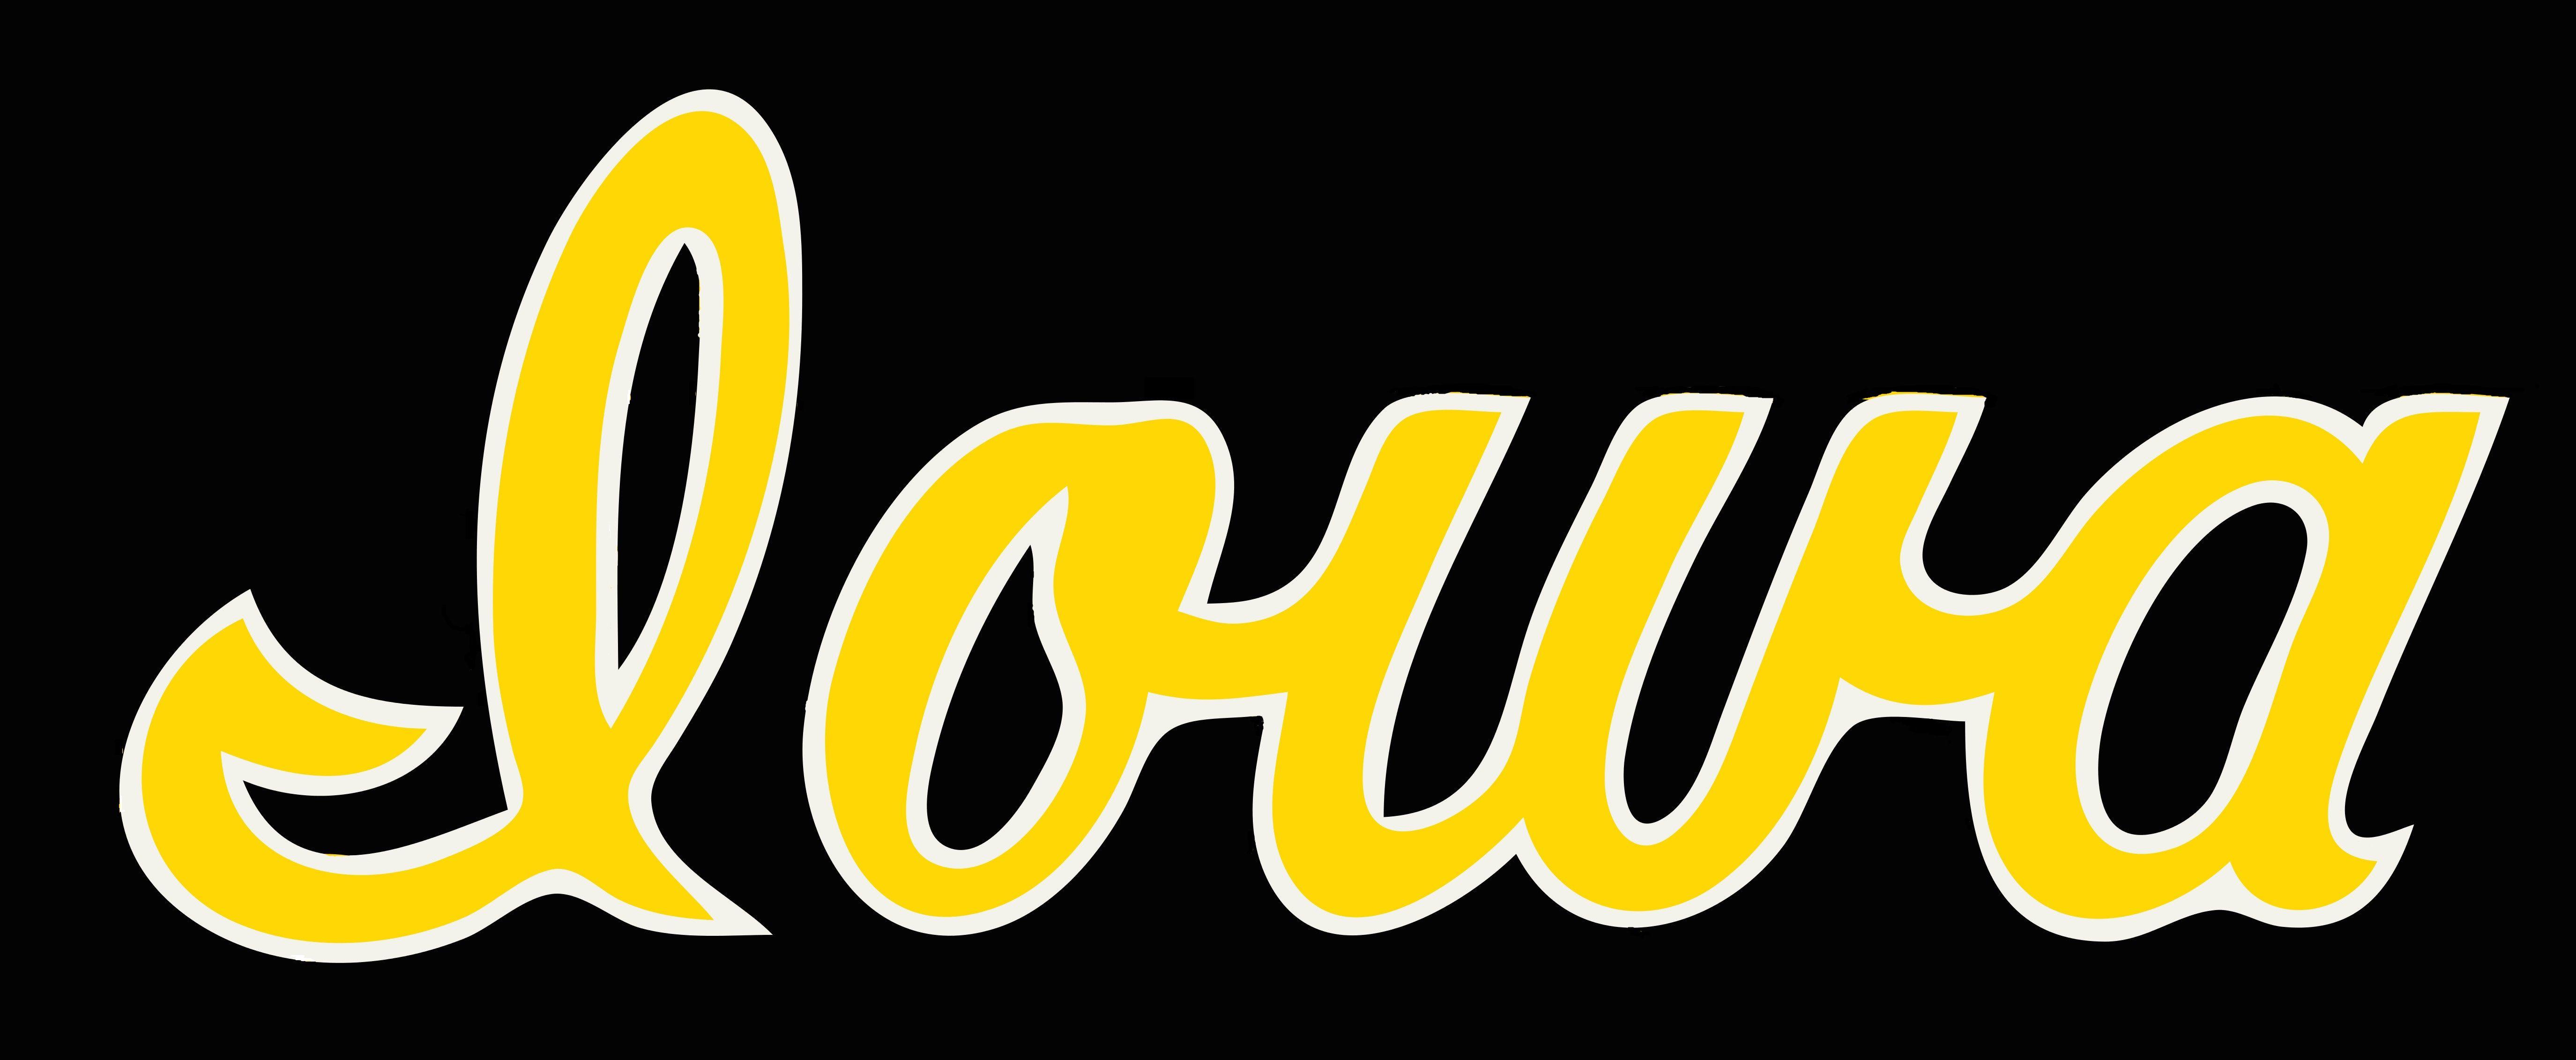 Iwoa Logo - iowa script logo - Imgur